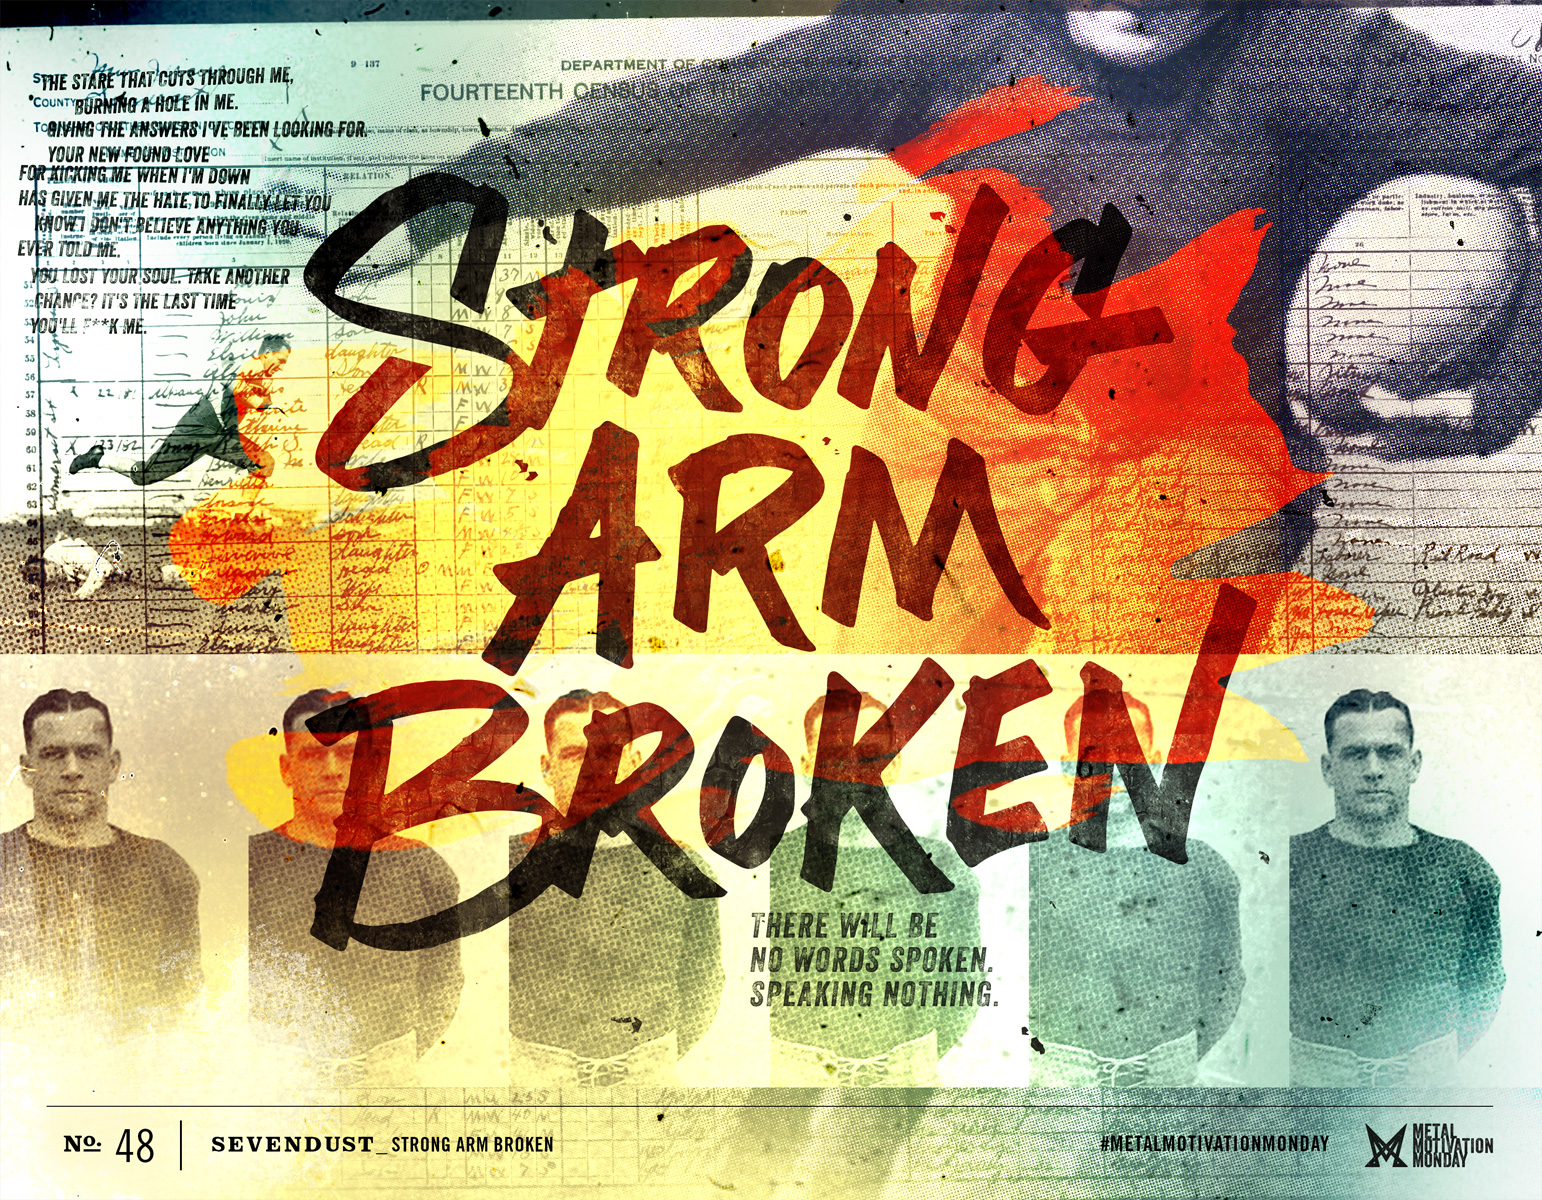 Sevendust: Strong Arm Broken